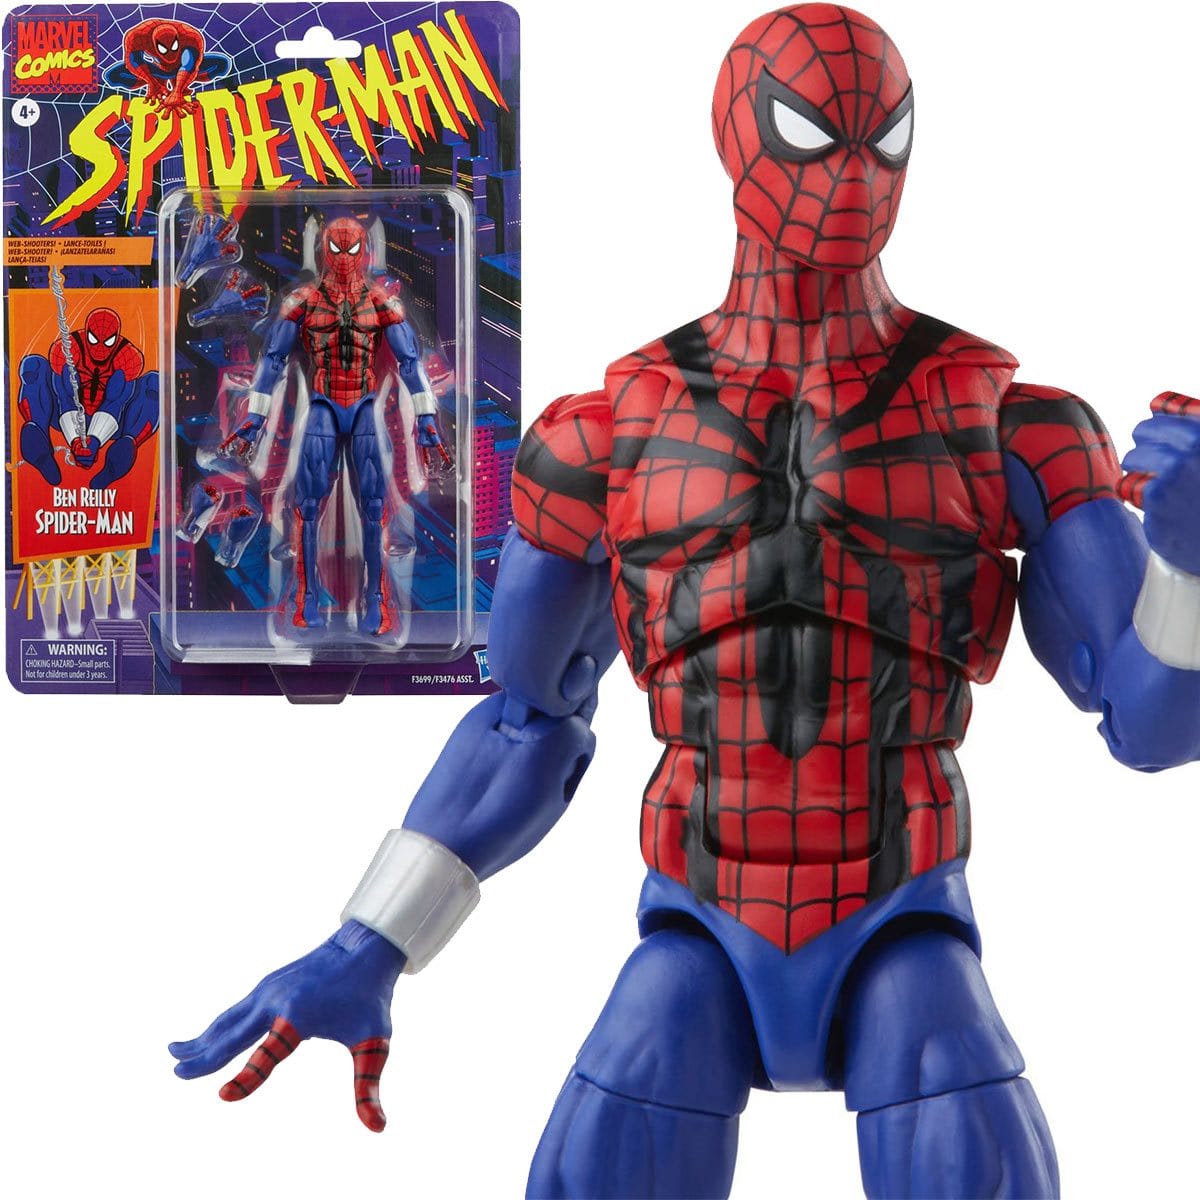 Spider-Man Retro Marvel Legends Legends Ben Reilly Spider-Man 6-inch Action Figure - Pop-O-Loco - Hasbro